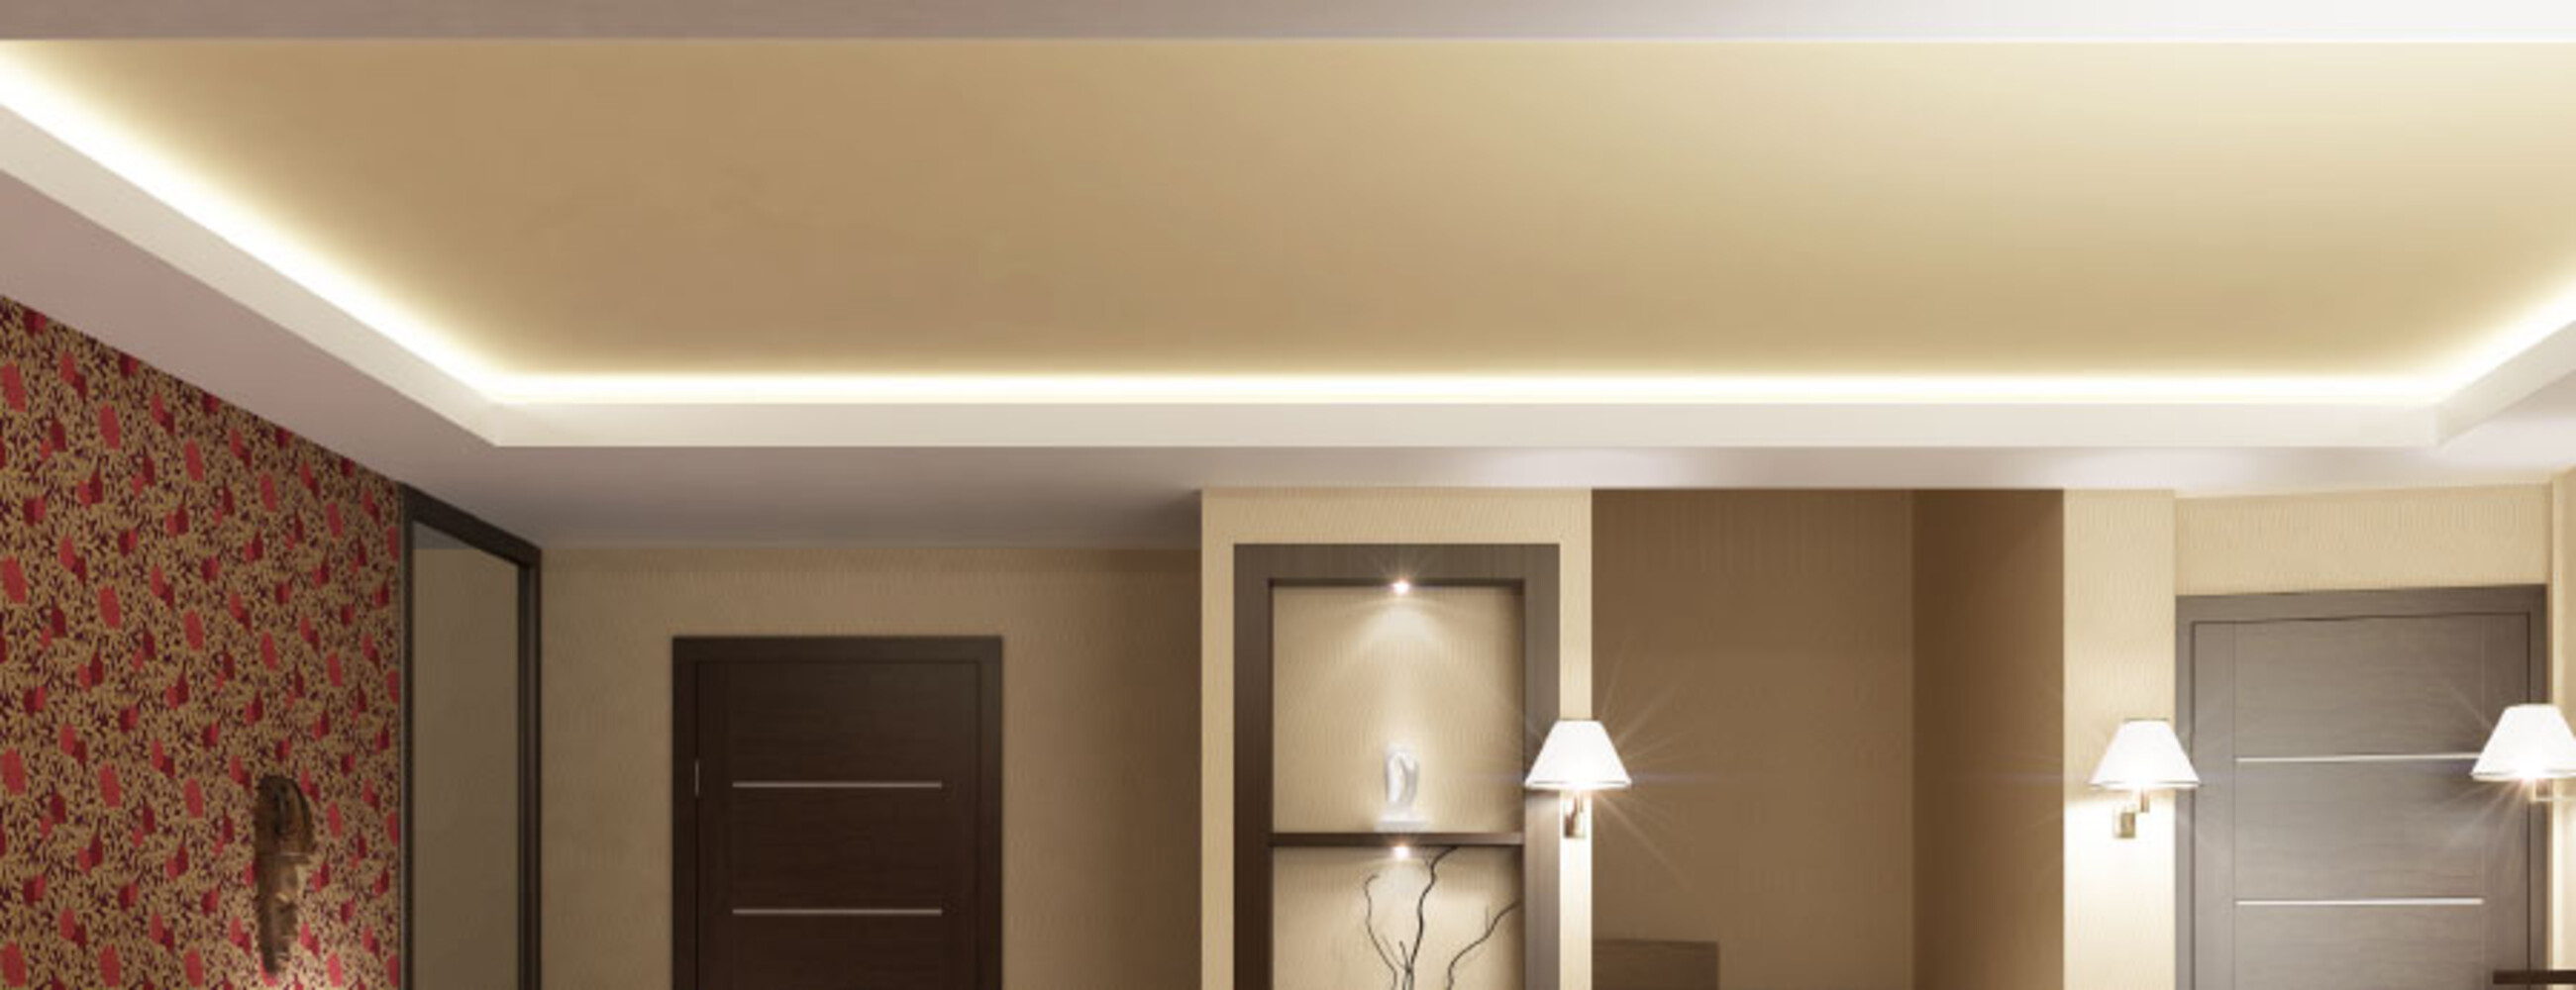 Hochwertiger Premium LED-Streifen von LED Universum in eleganter warmweißer Lichtfarbe